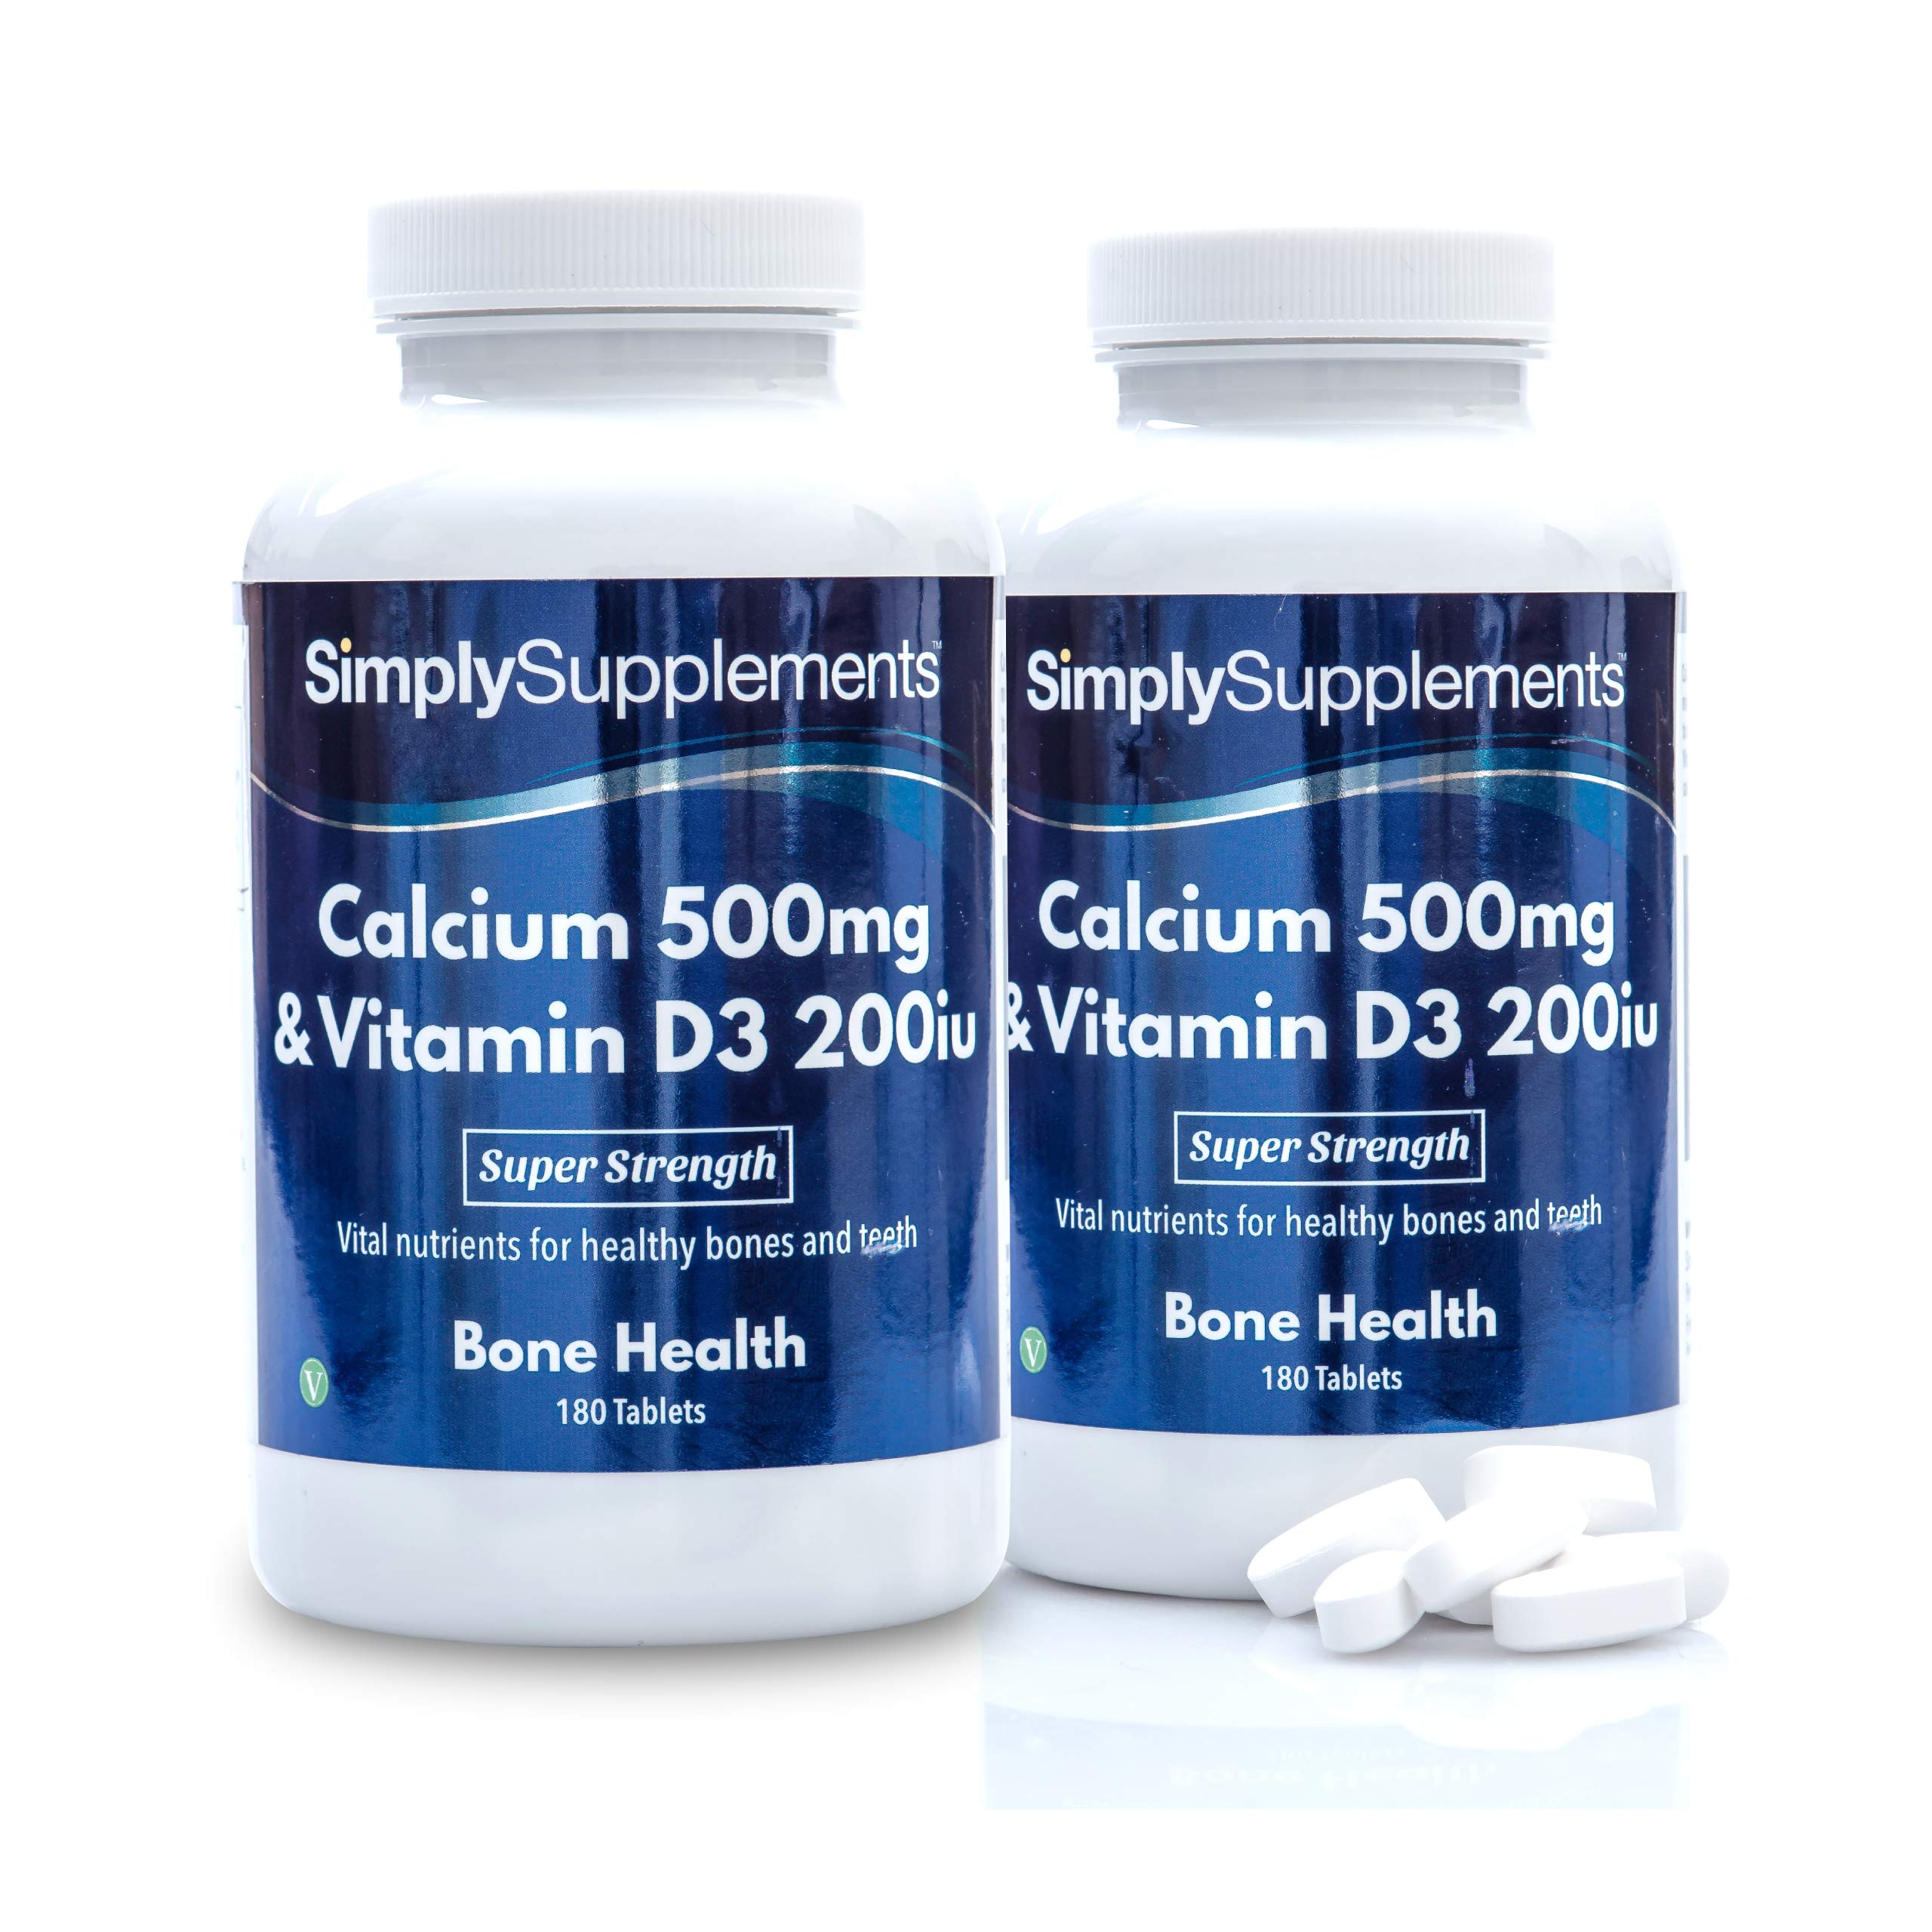 Kalzium 500mg & Vitamin D3 200iu - 360 Tabletten - geeigent für Vegetarier - Versorgung für 6 Monate - SimplySupplements